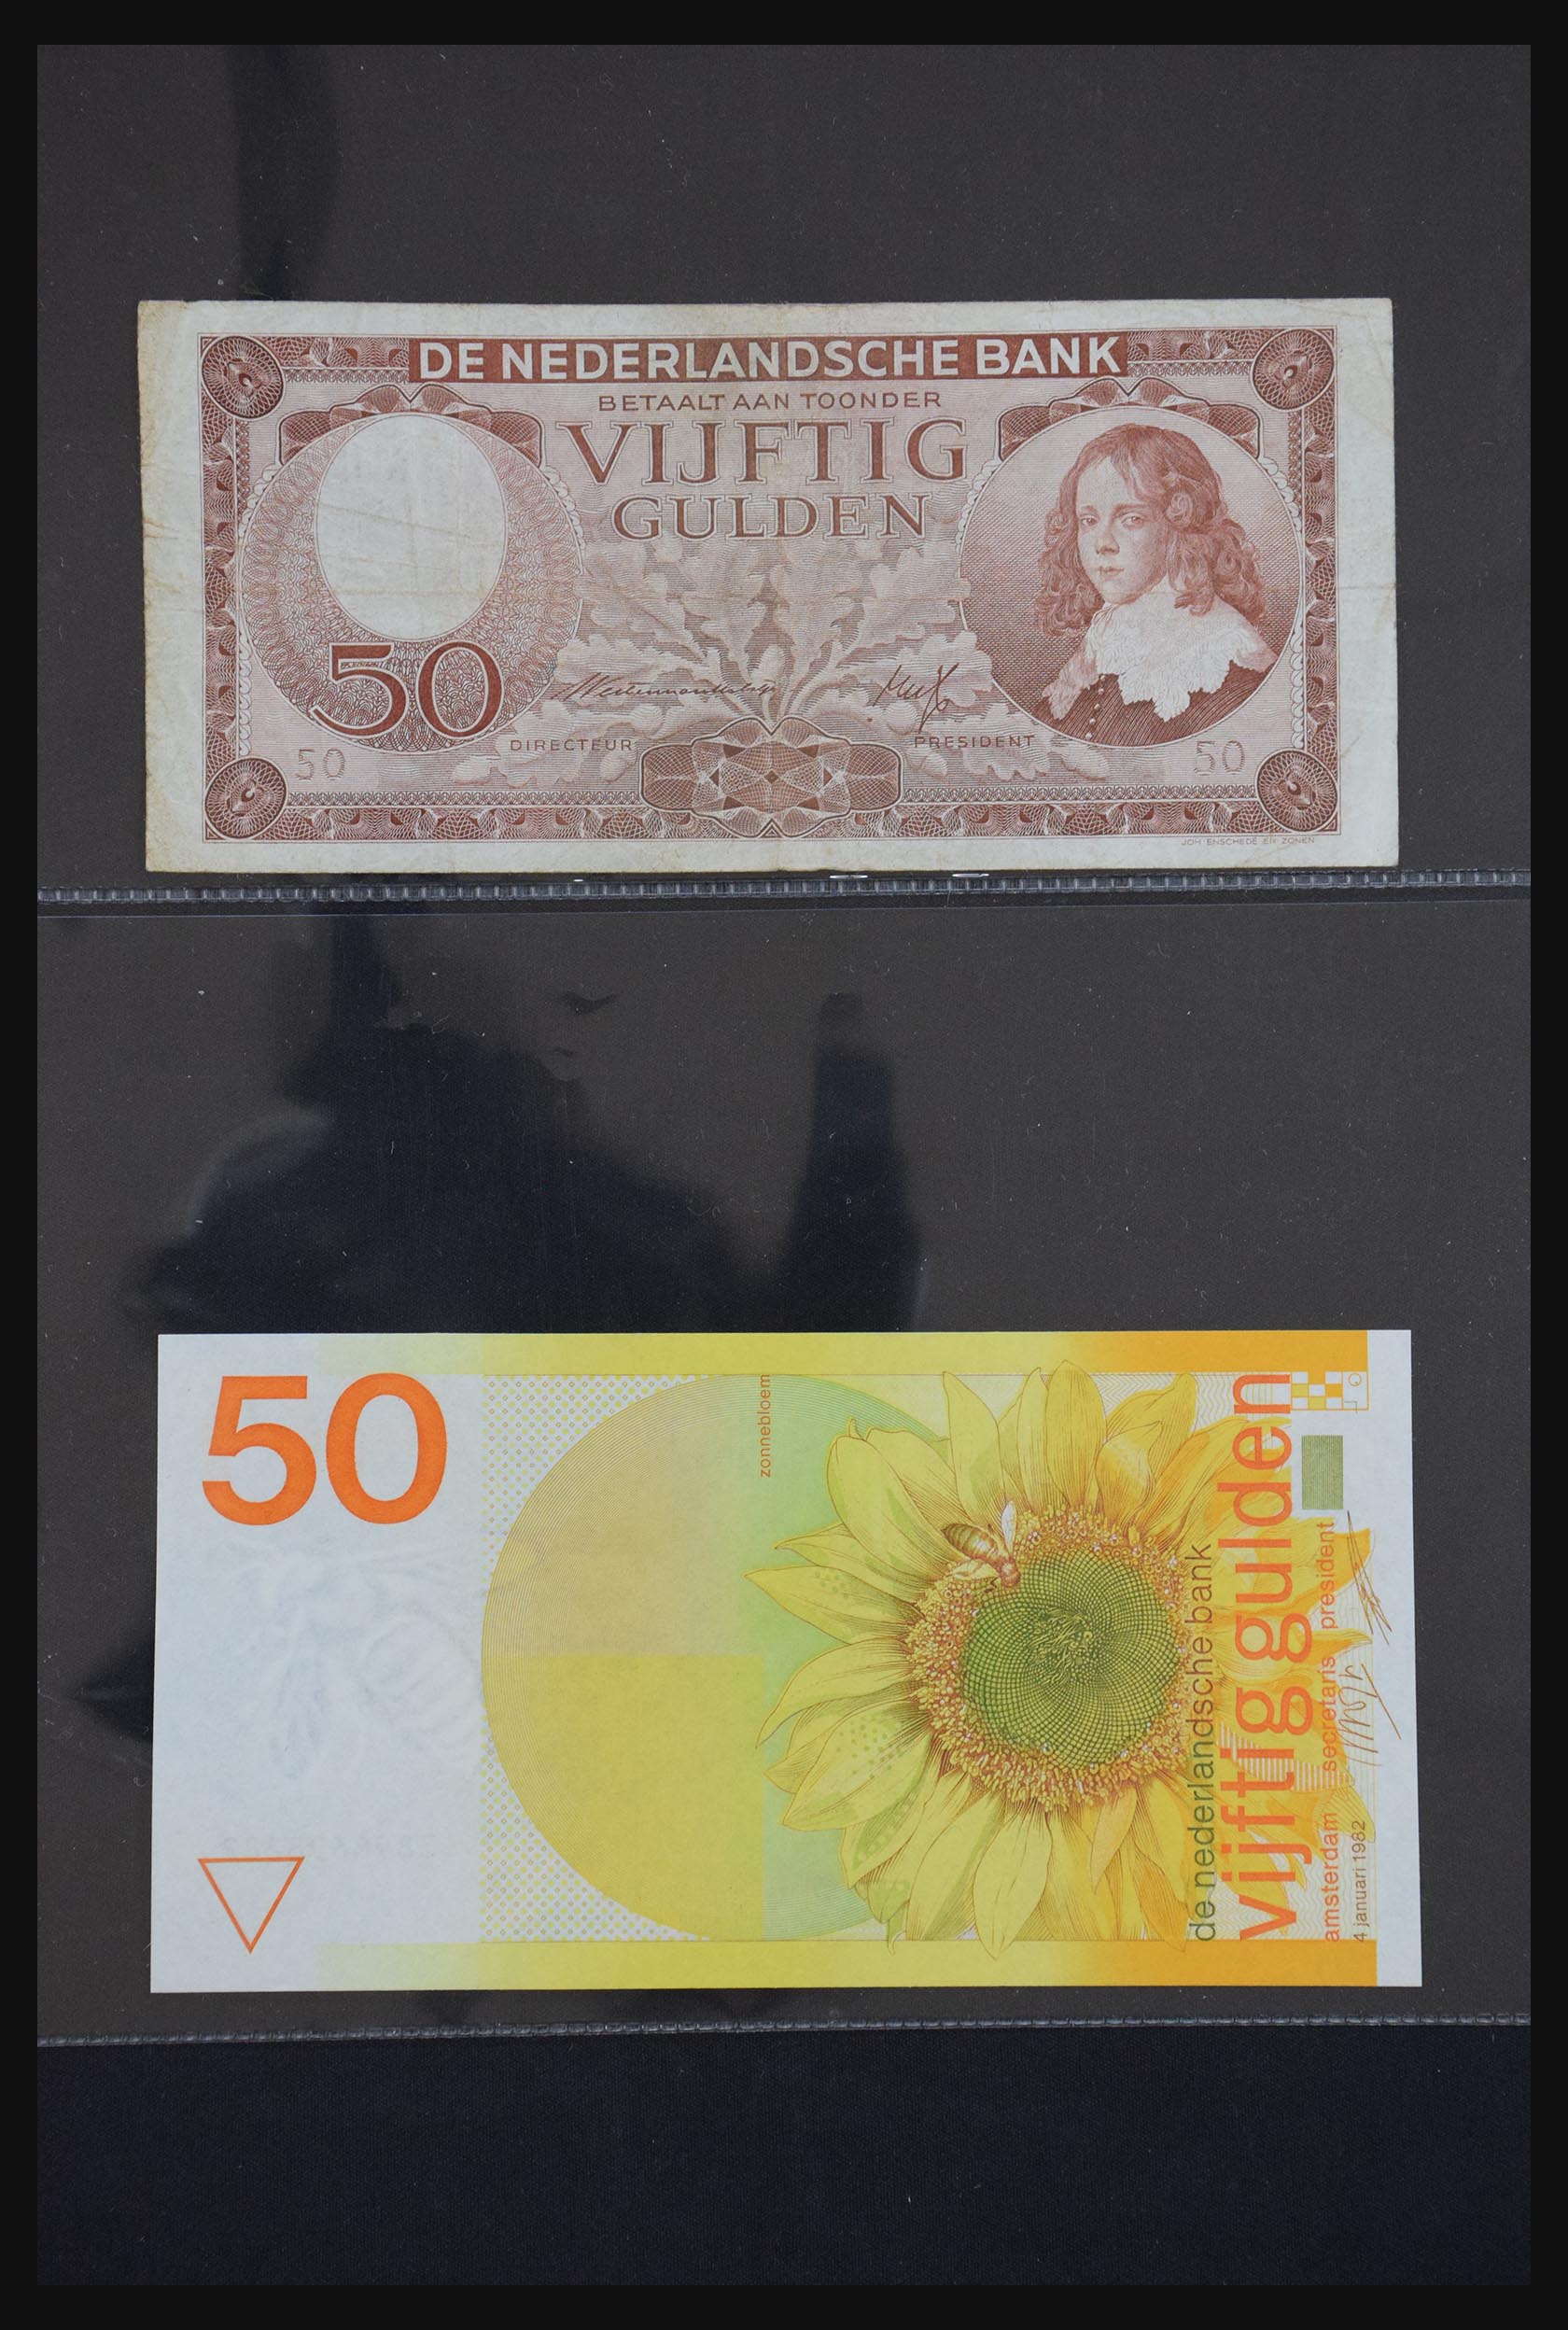 29404 039 - 29404 Netherlands banknotes 1924-1997.